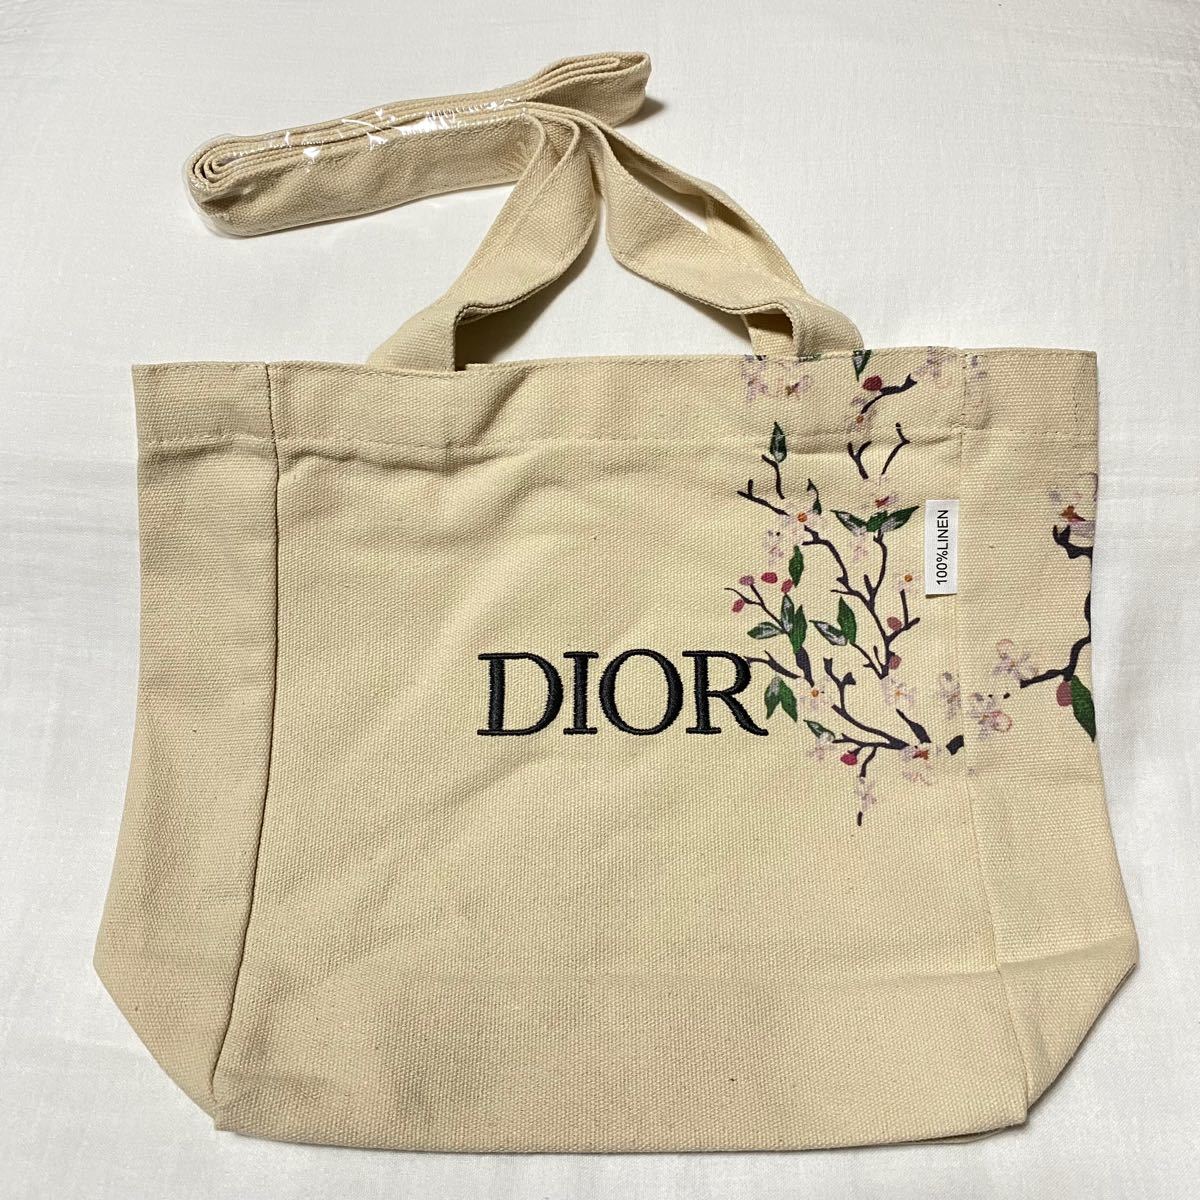 売れ筋特価 Dior ディオール ノベルティ トートバッグ 安い 大阪店舗:14877円 ブランド:クリスチャンディオール トート